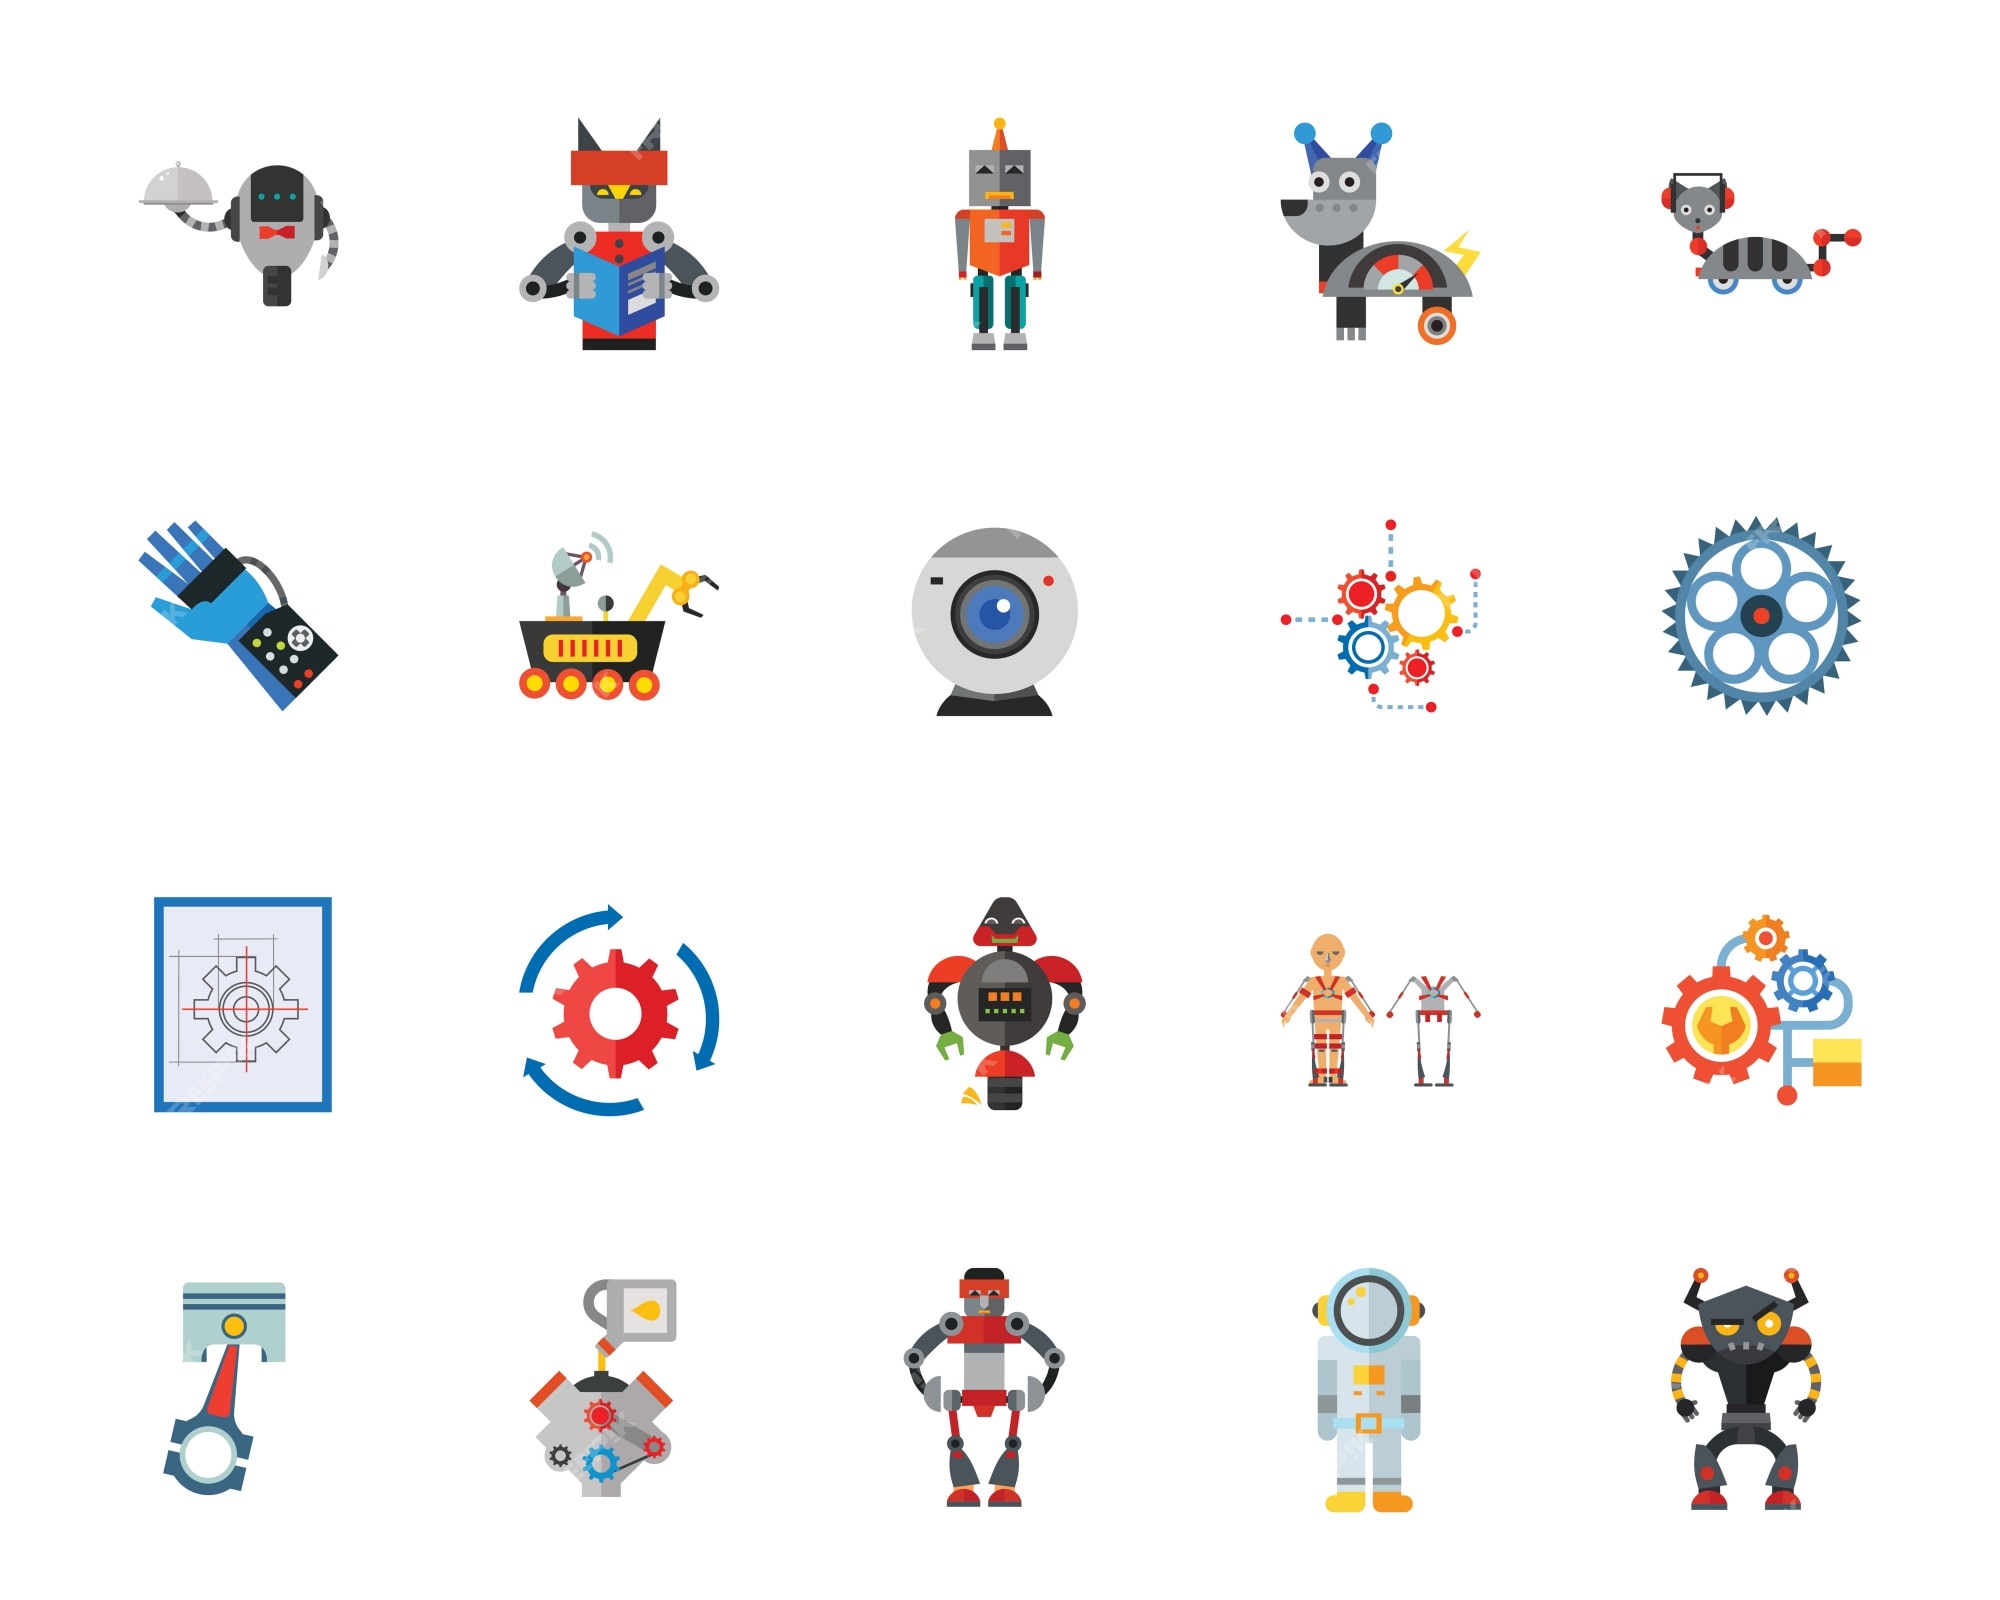 Robot Icon Images - Free on Freepik